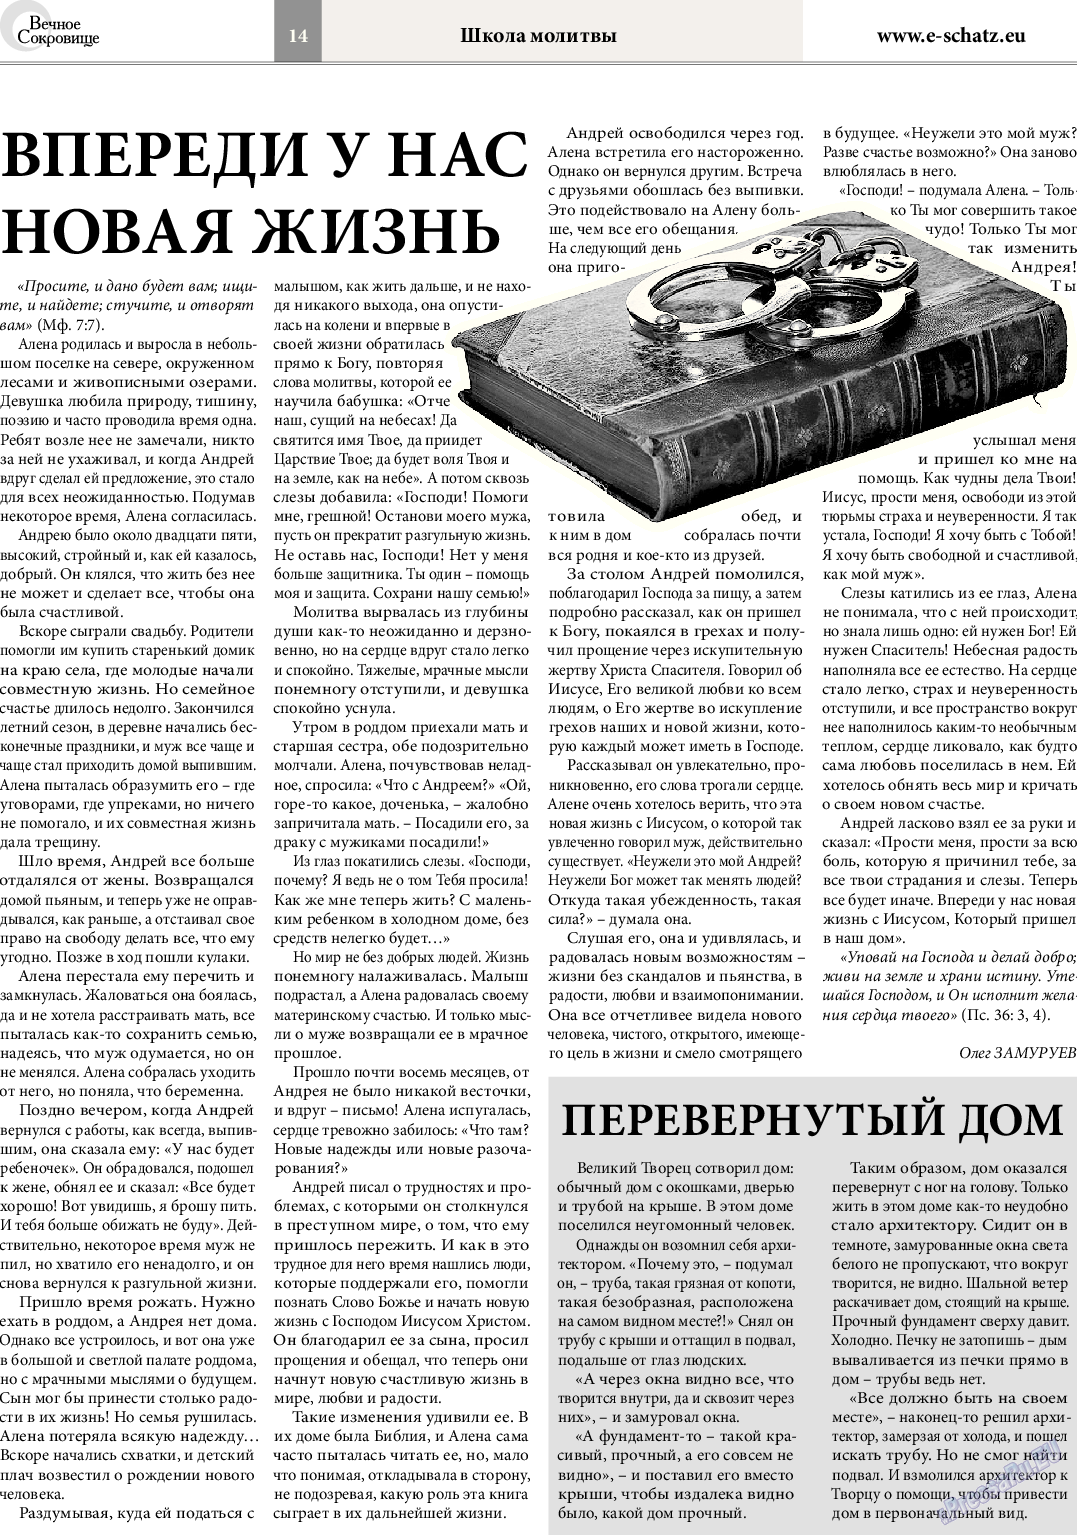 Вечное сокровище (газета). 2014 год, номер 3, стр. 14